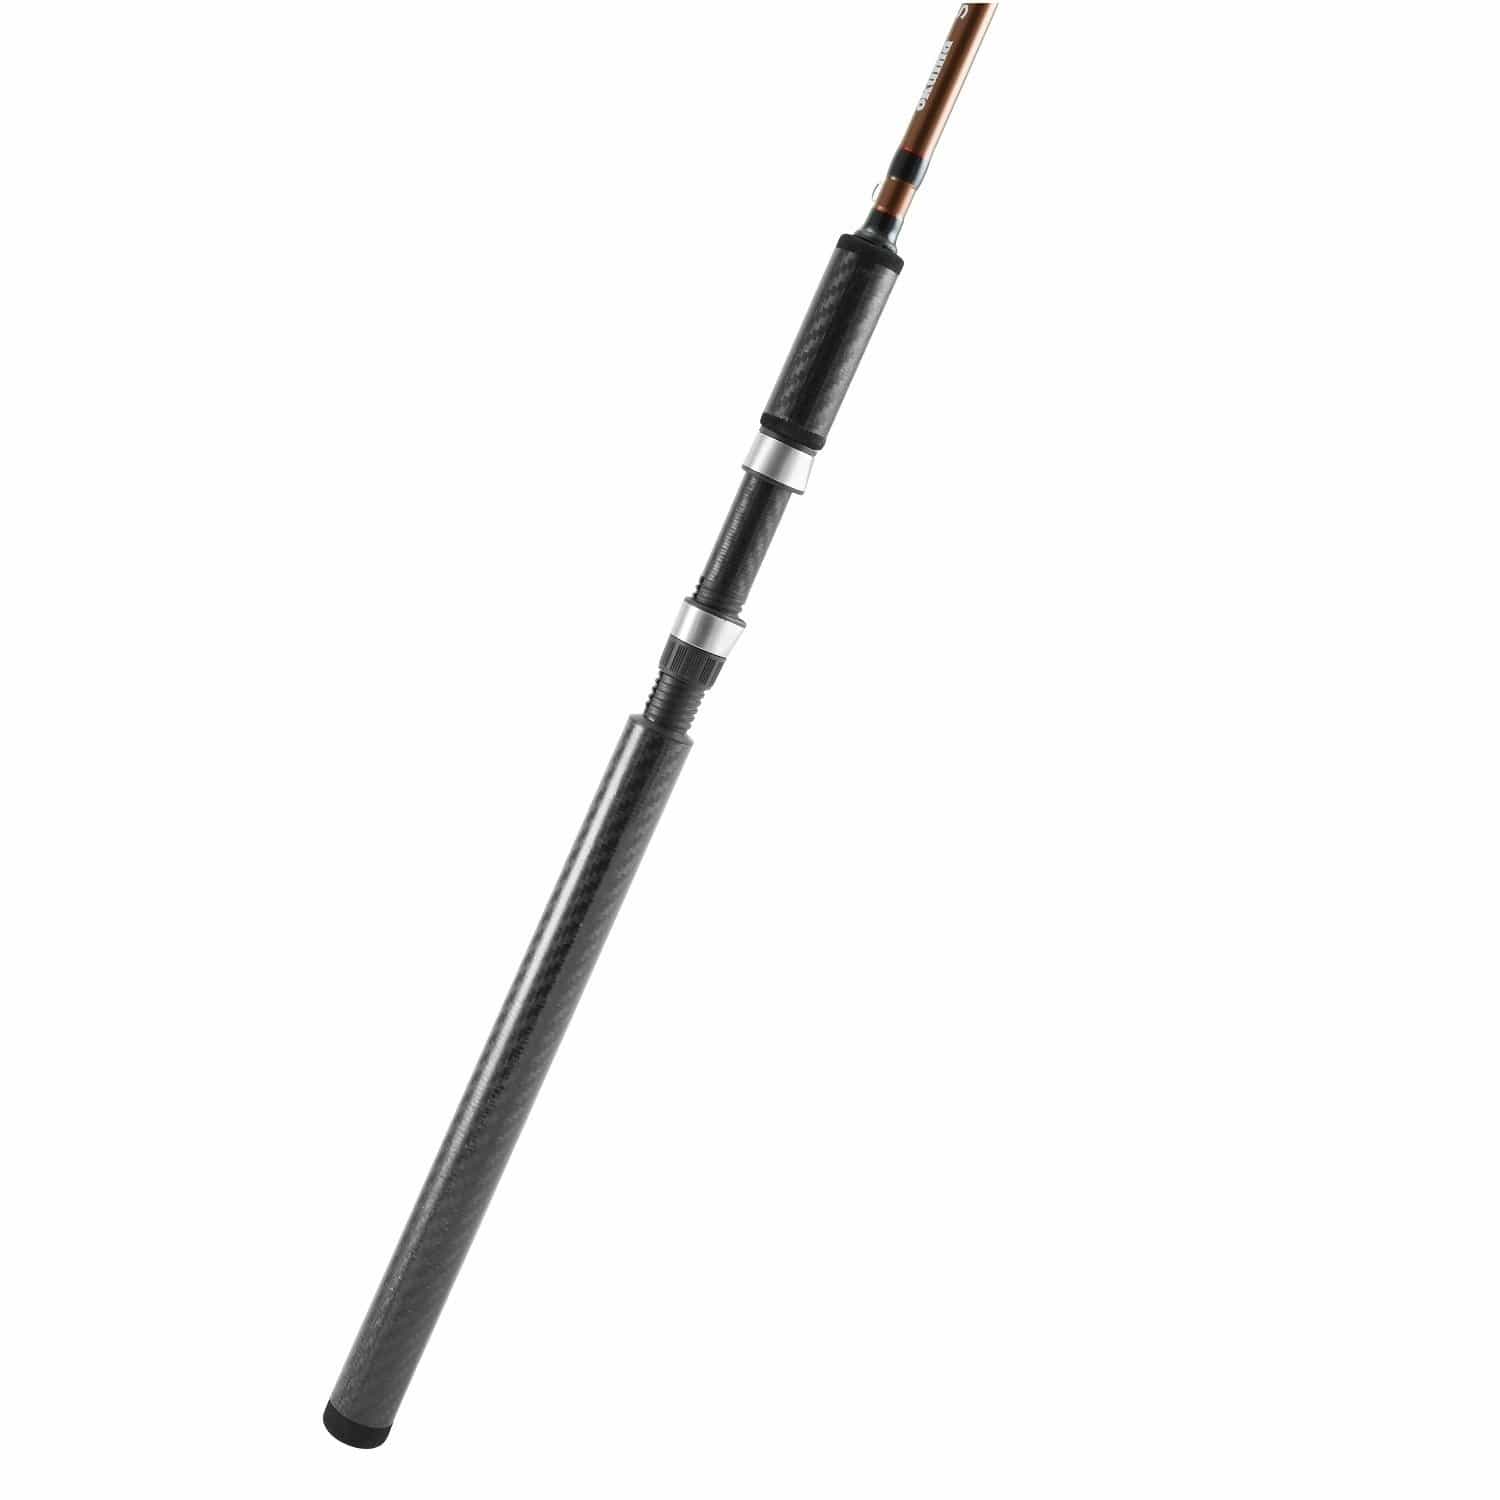 Okuma Fishing : Rods Okuma SST Spinning Rod -Carbon Fiber Grips 8ft6in Md. Heavy